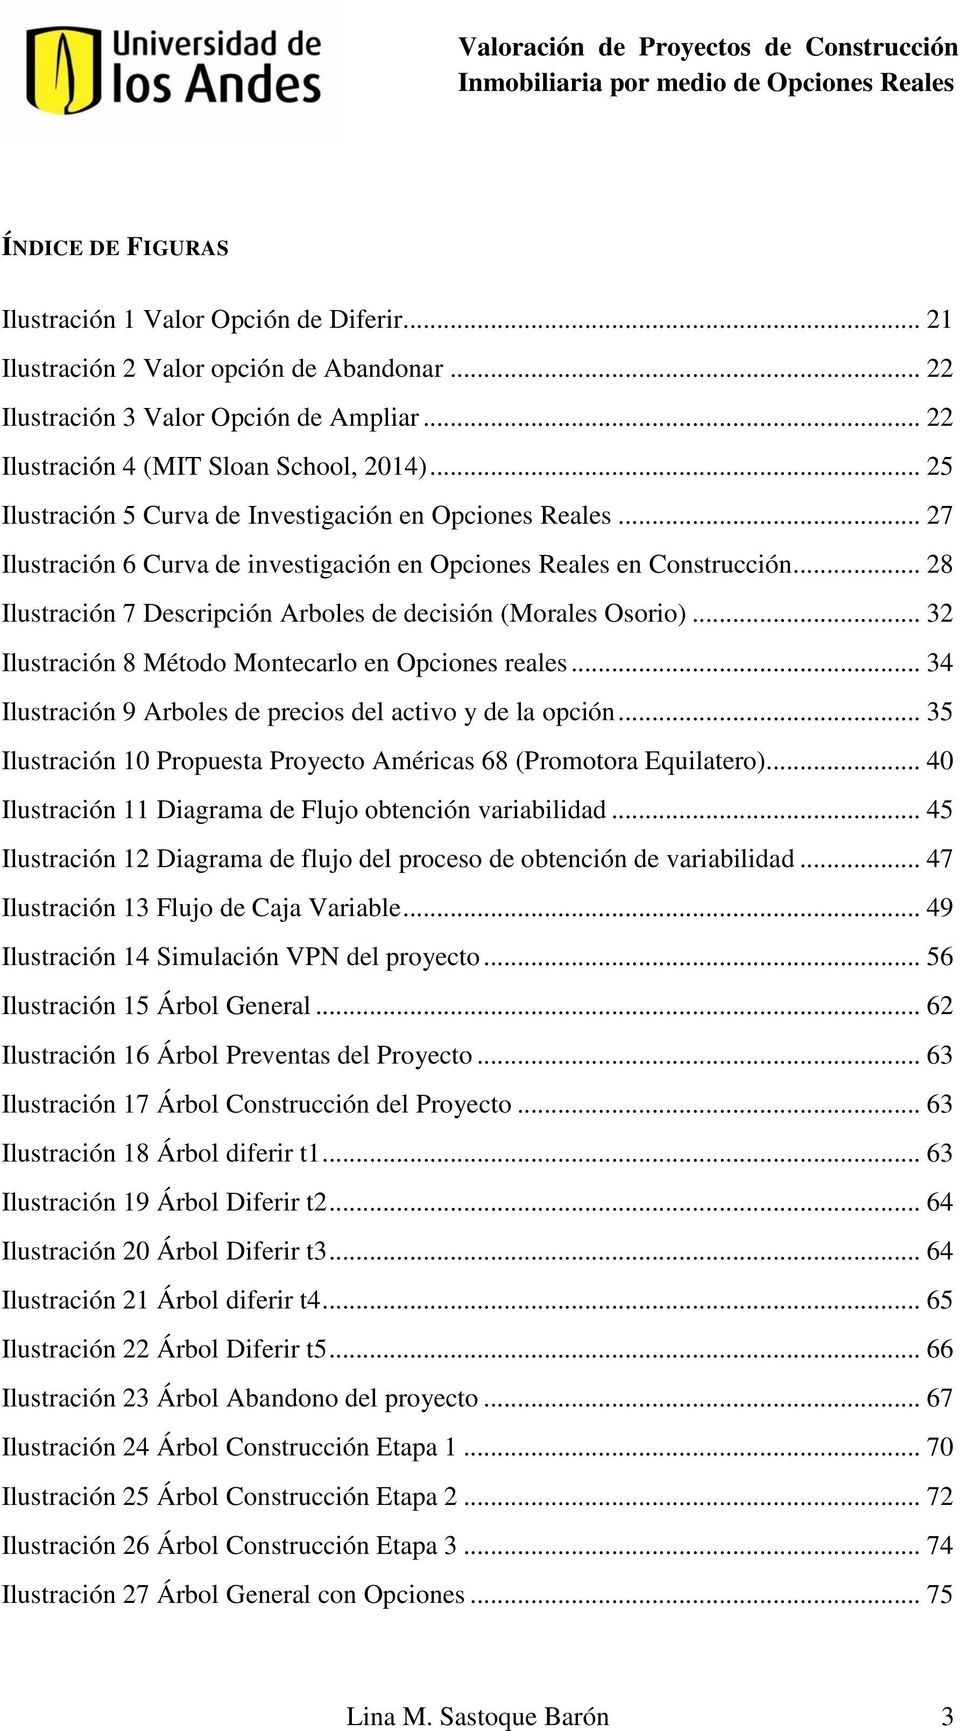 .. 27 Ilustración 6 Curva de investigación en Opciones Reales en Construcción... 28 Ilustración 7 Descripción Arboles de decisión (Morales Osorio).